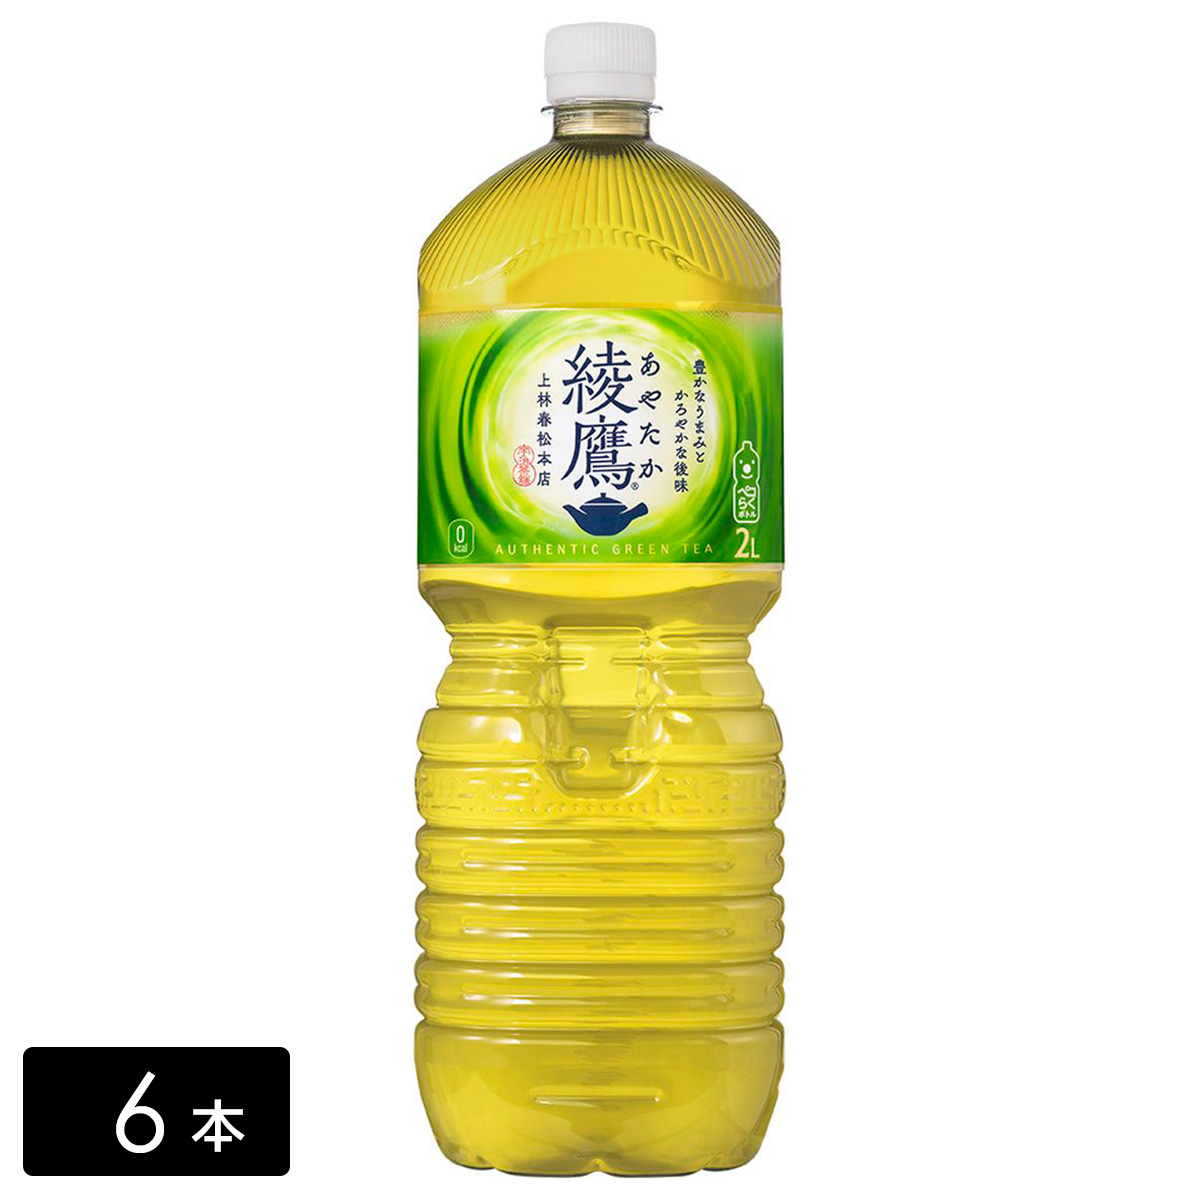 【送料無料 + 17】綾鷹 緑茶 2L×6本(1箱)